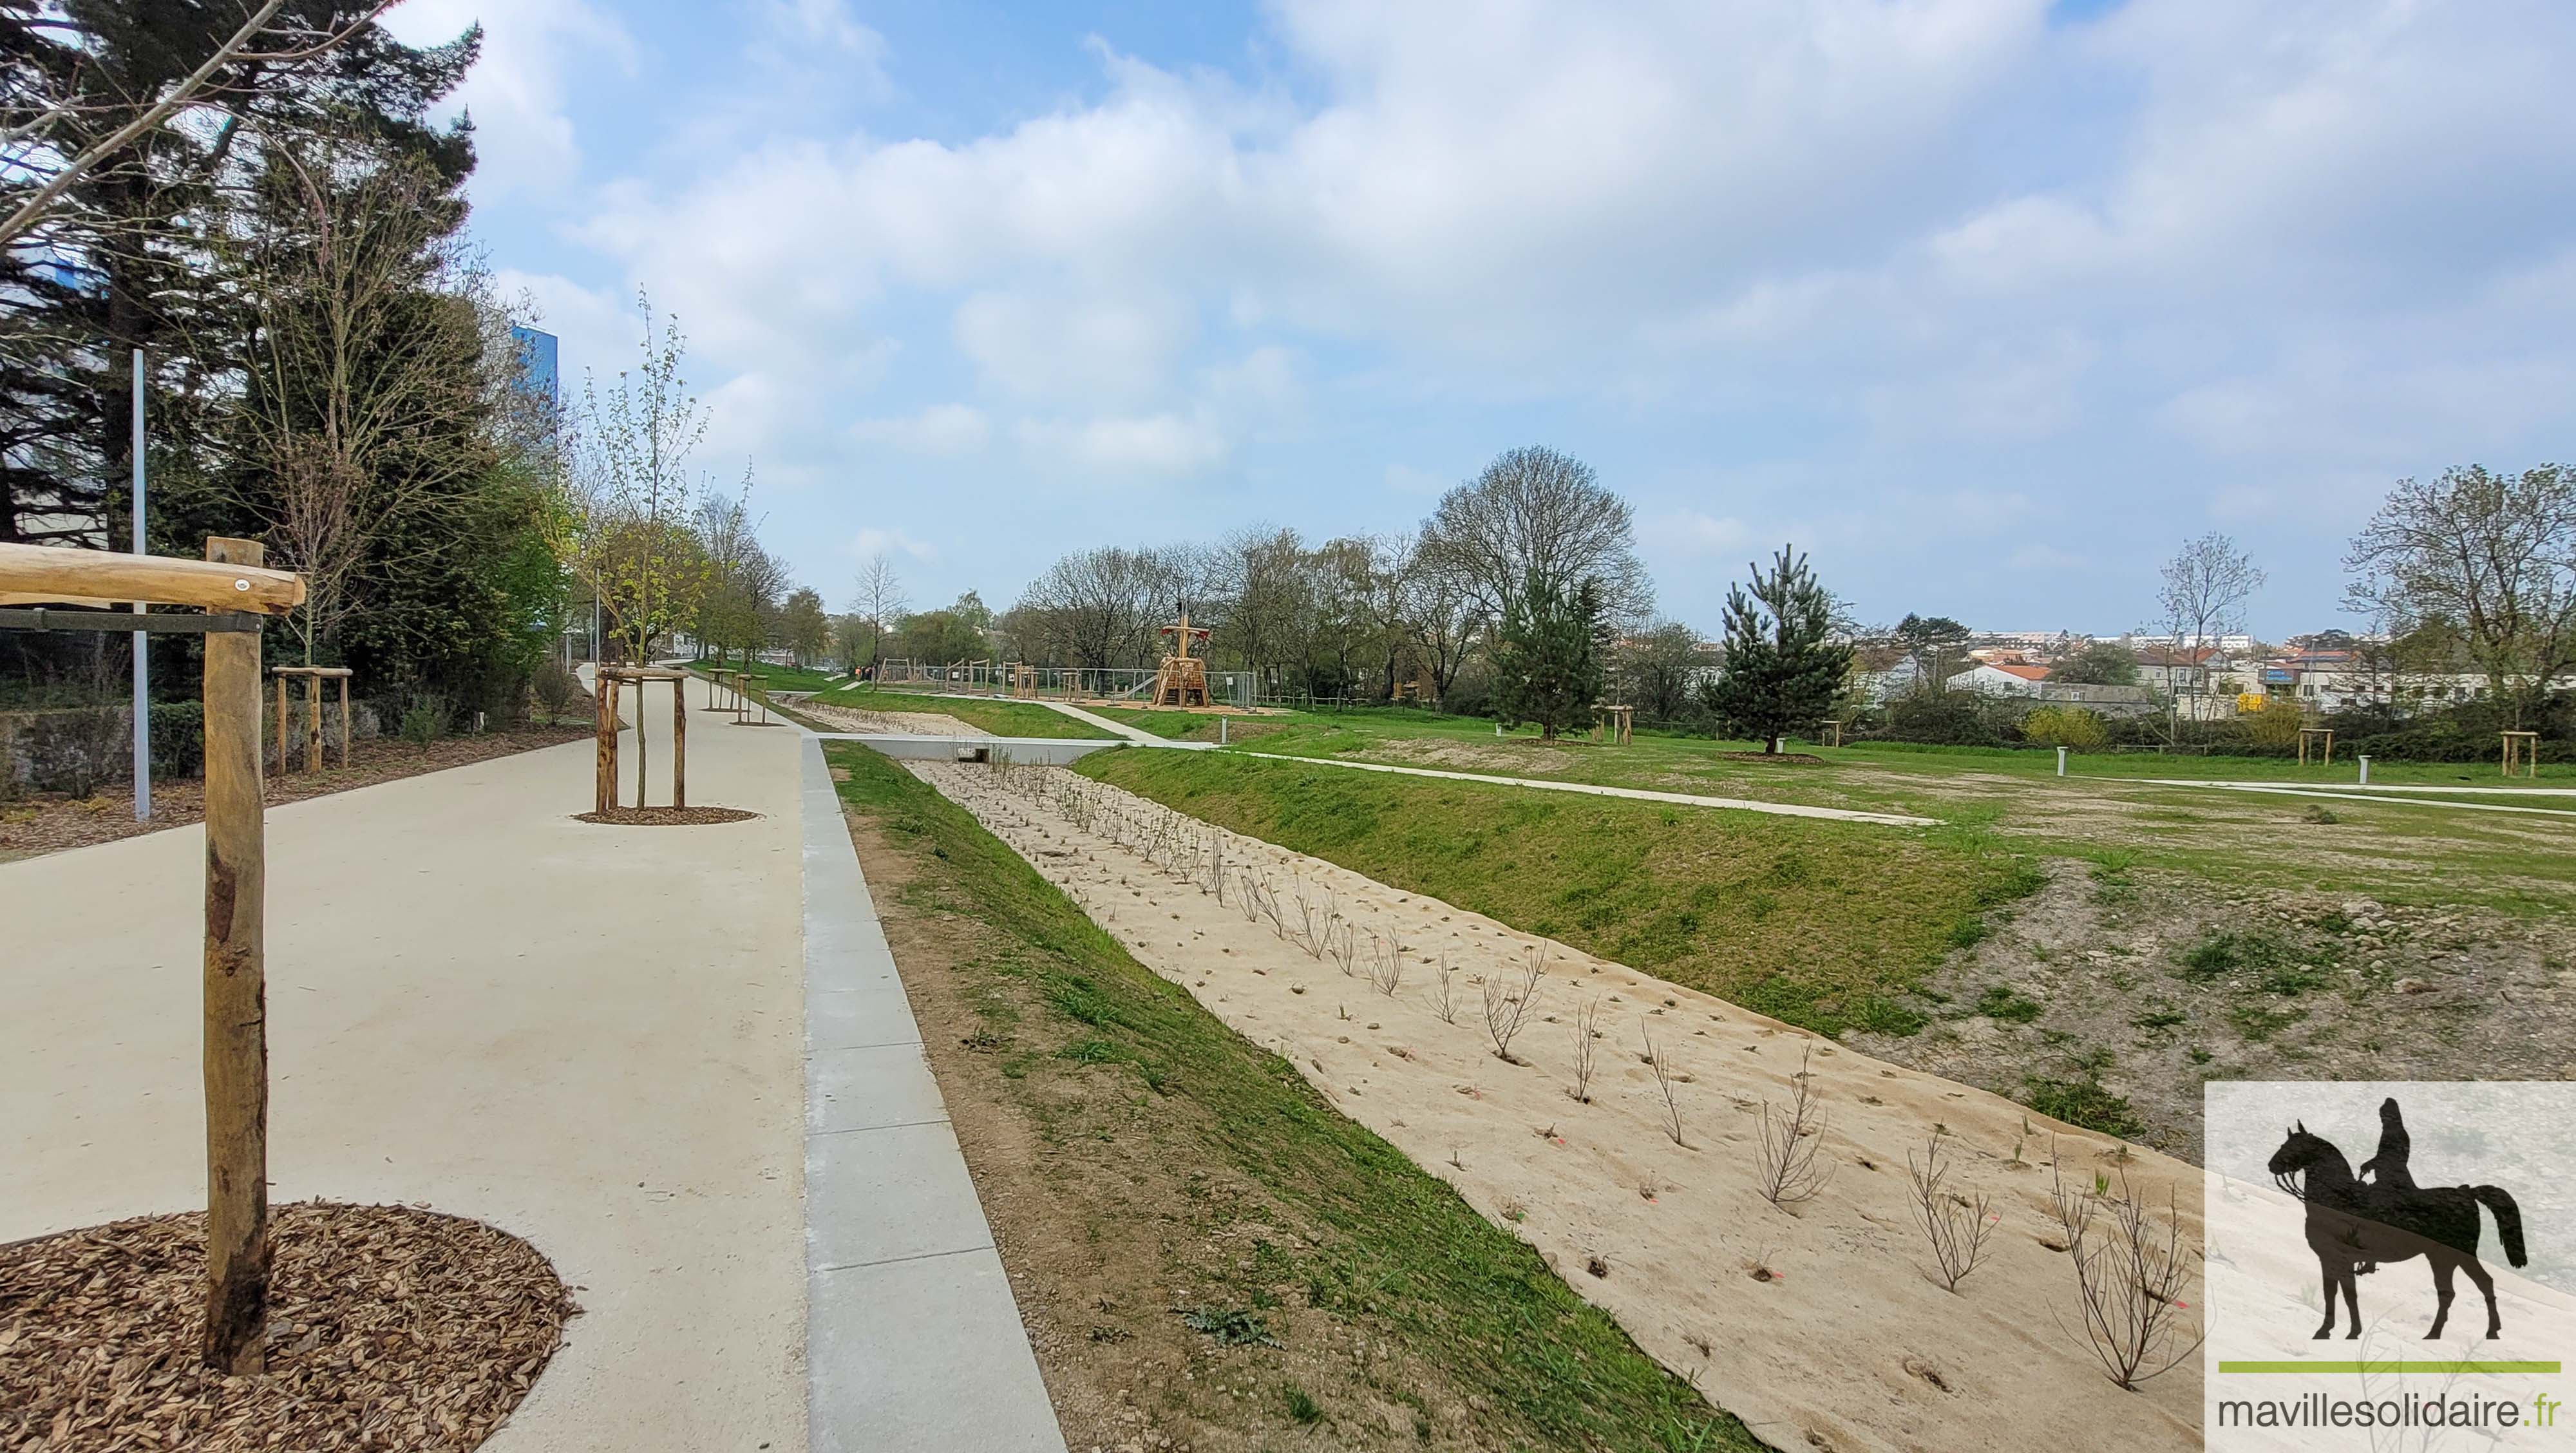 Nouveau parc urbain La Roche sur Yon LRSY mavillesolidaire.fr 1 111924